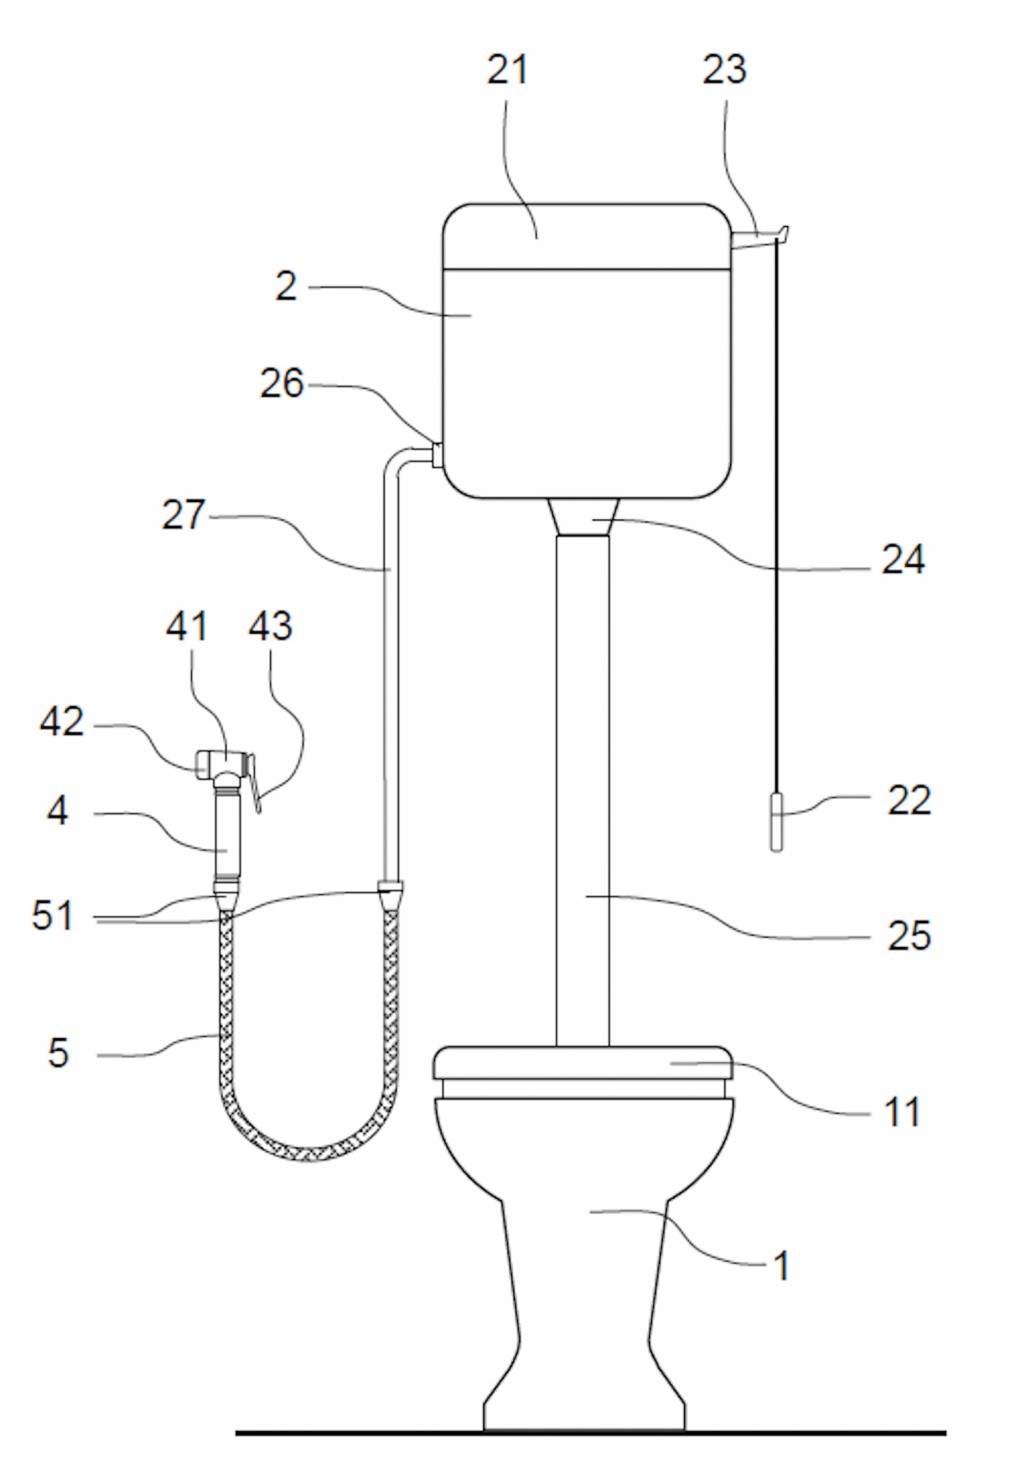 Einfacher und fachgerechter Anschluss einer Hygienedusche gemäß DIN EN 1717 (Kategorie 5, freier Auslauf) aus der Gebrauchsmusteranmeldung der Firma Schell. Bild: Schell, Olpe